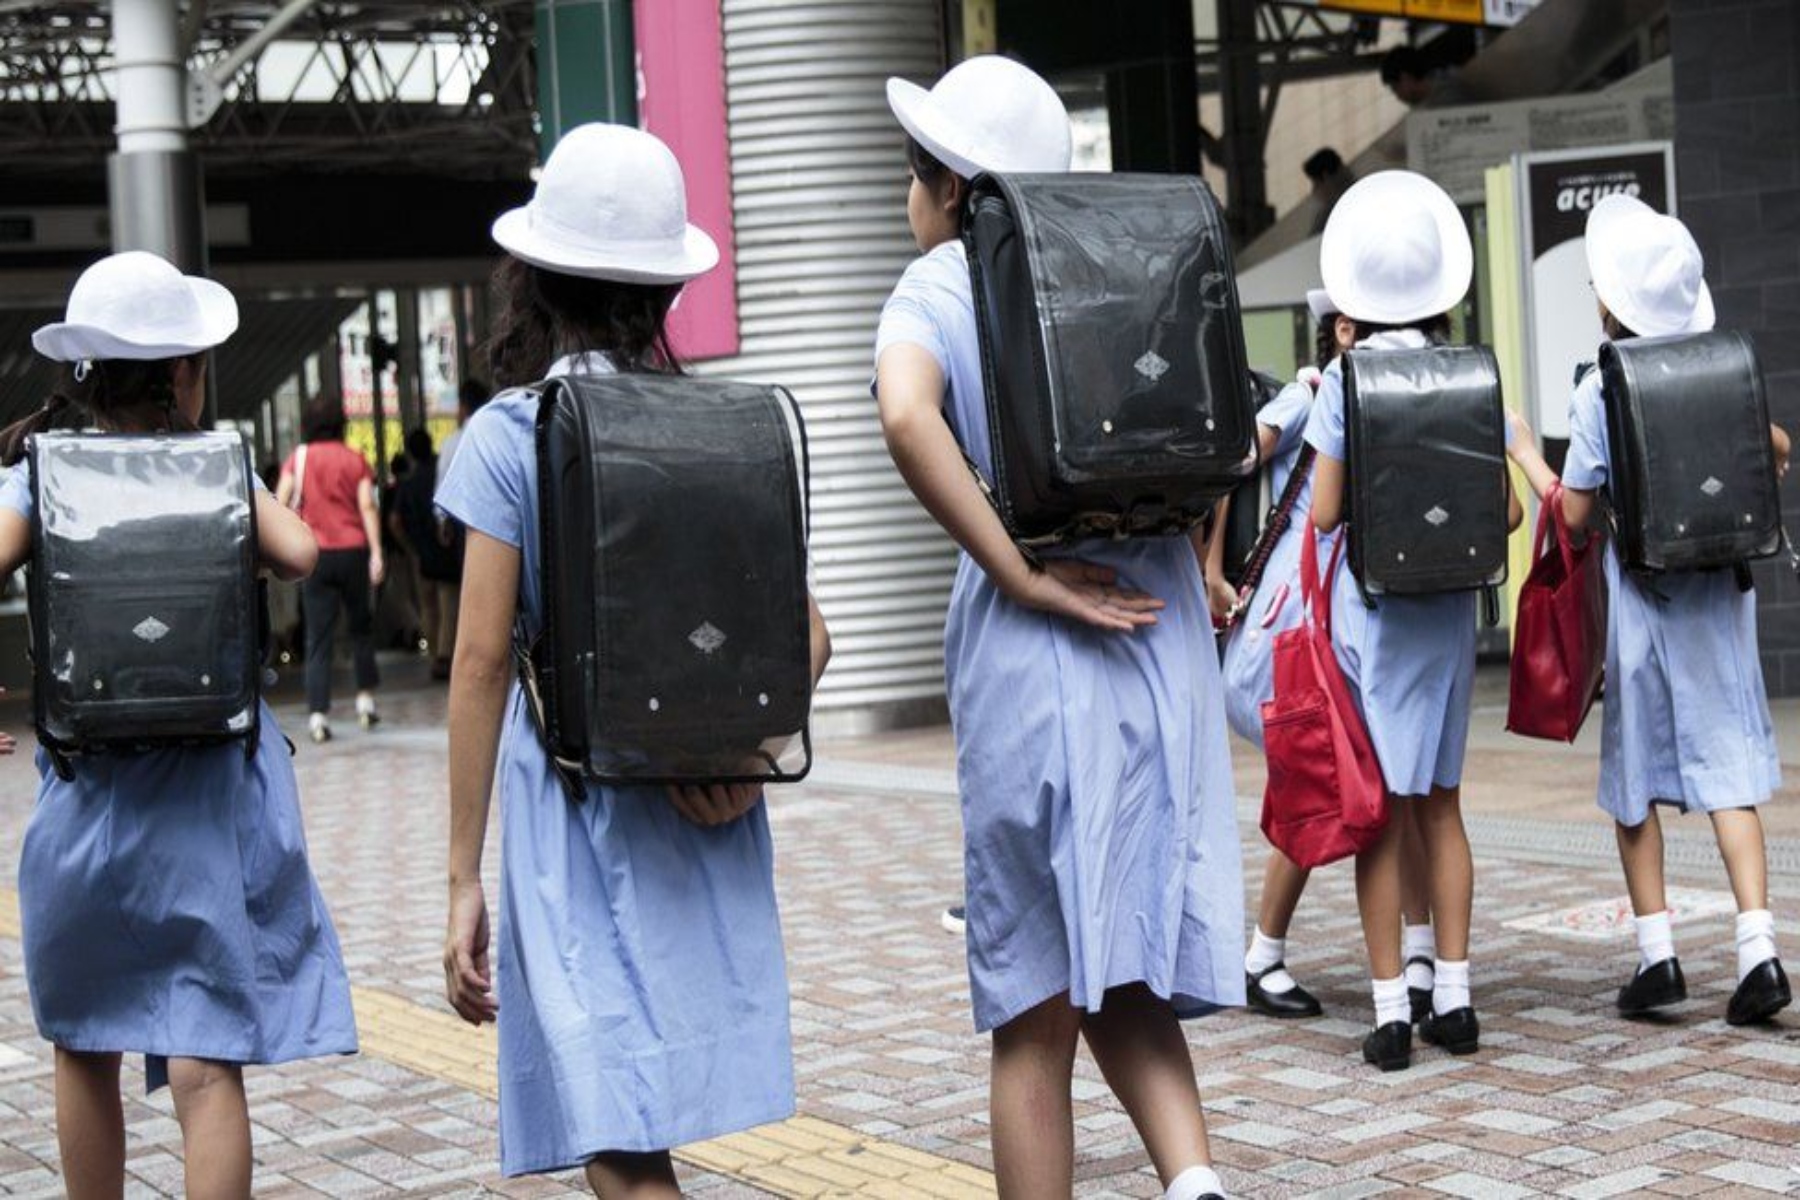 Ιαπωνία: Μόνο το 30% των κέντρων συμβουλευτικής για παιδιά διαθέτουν οδηγίες για πρόληψη σεξουαλικής κακοποίησης